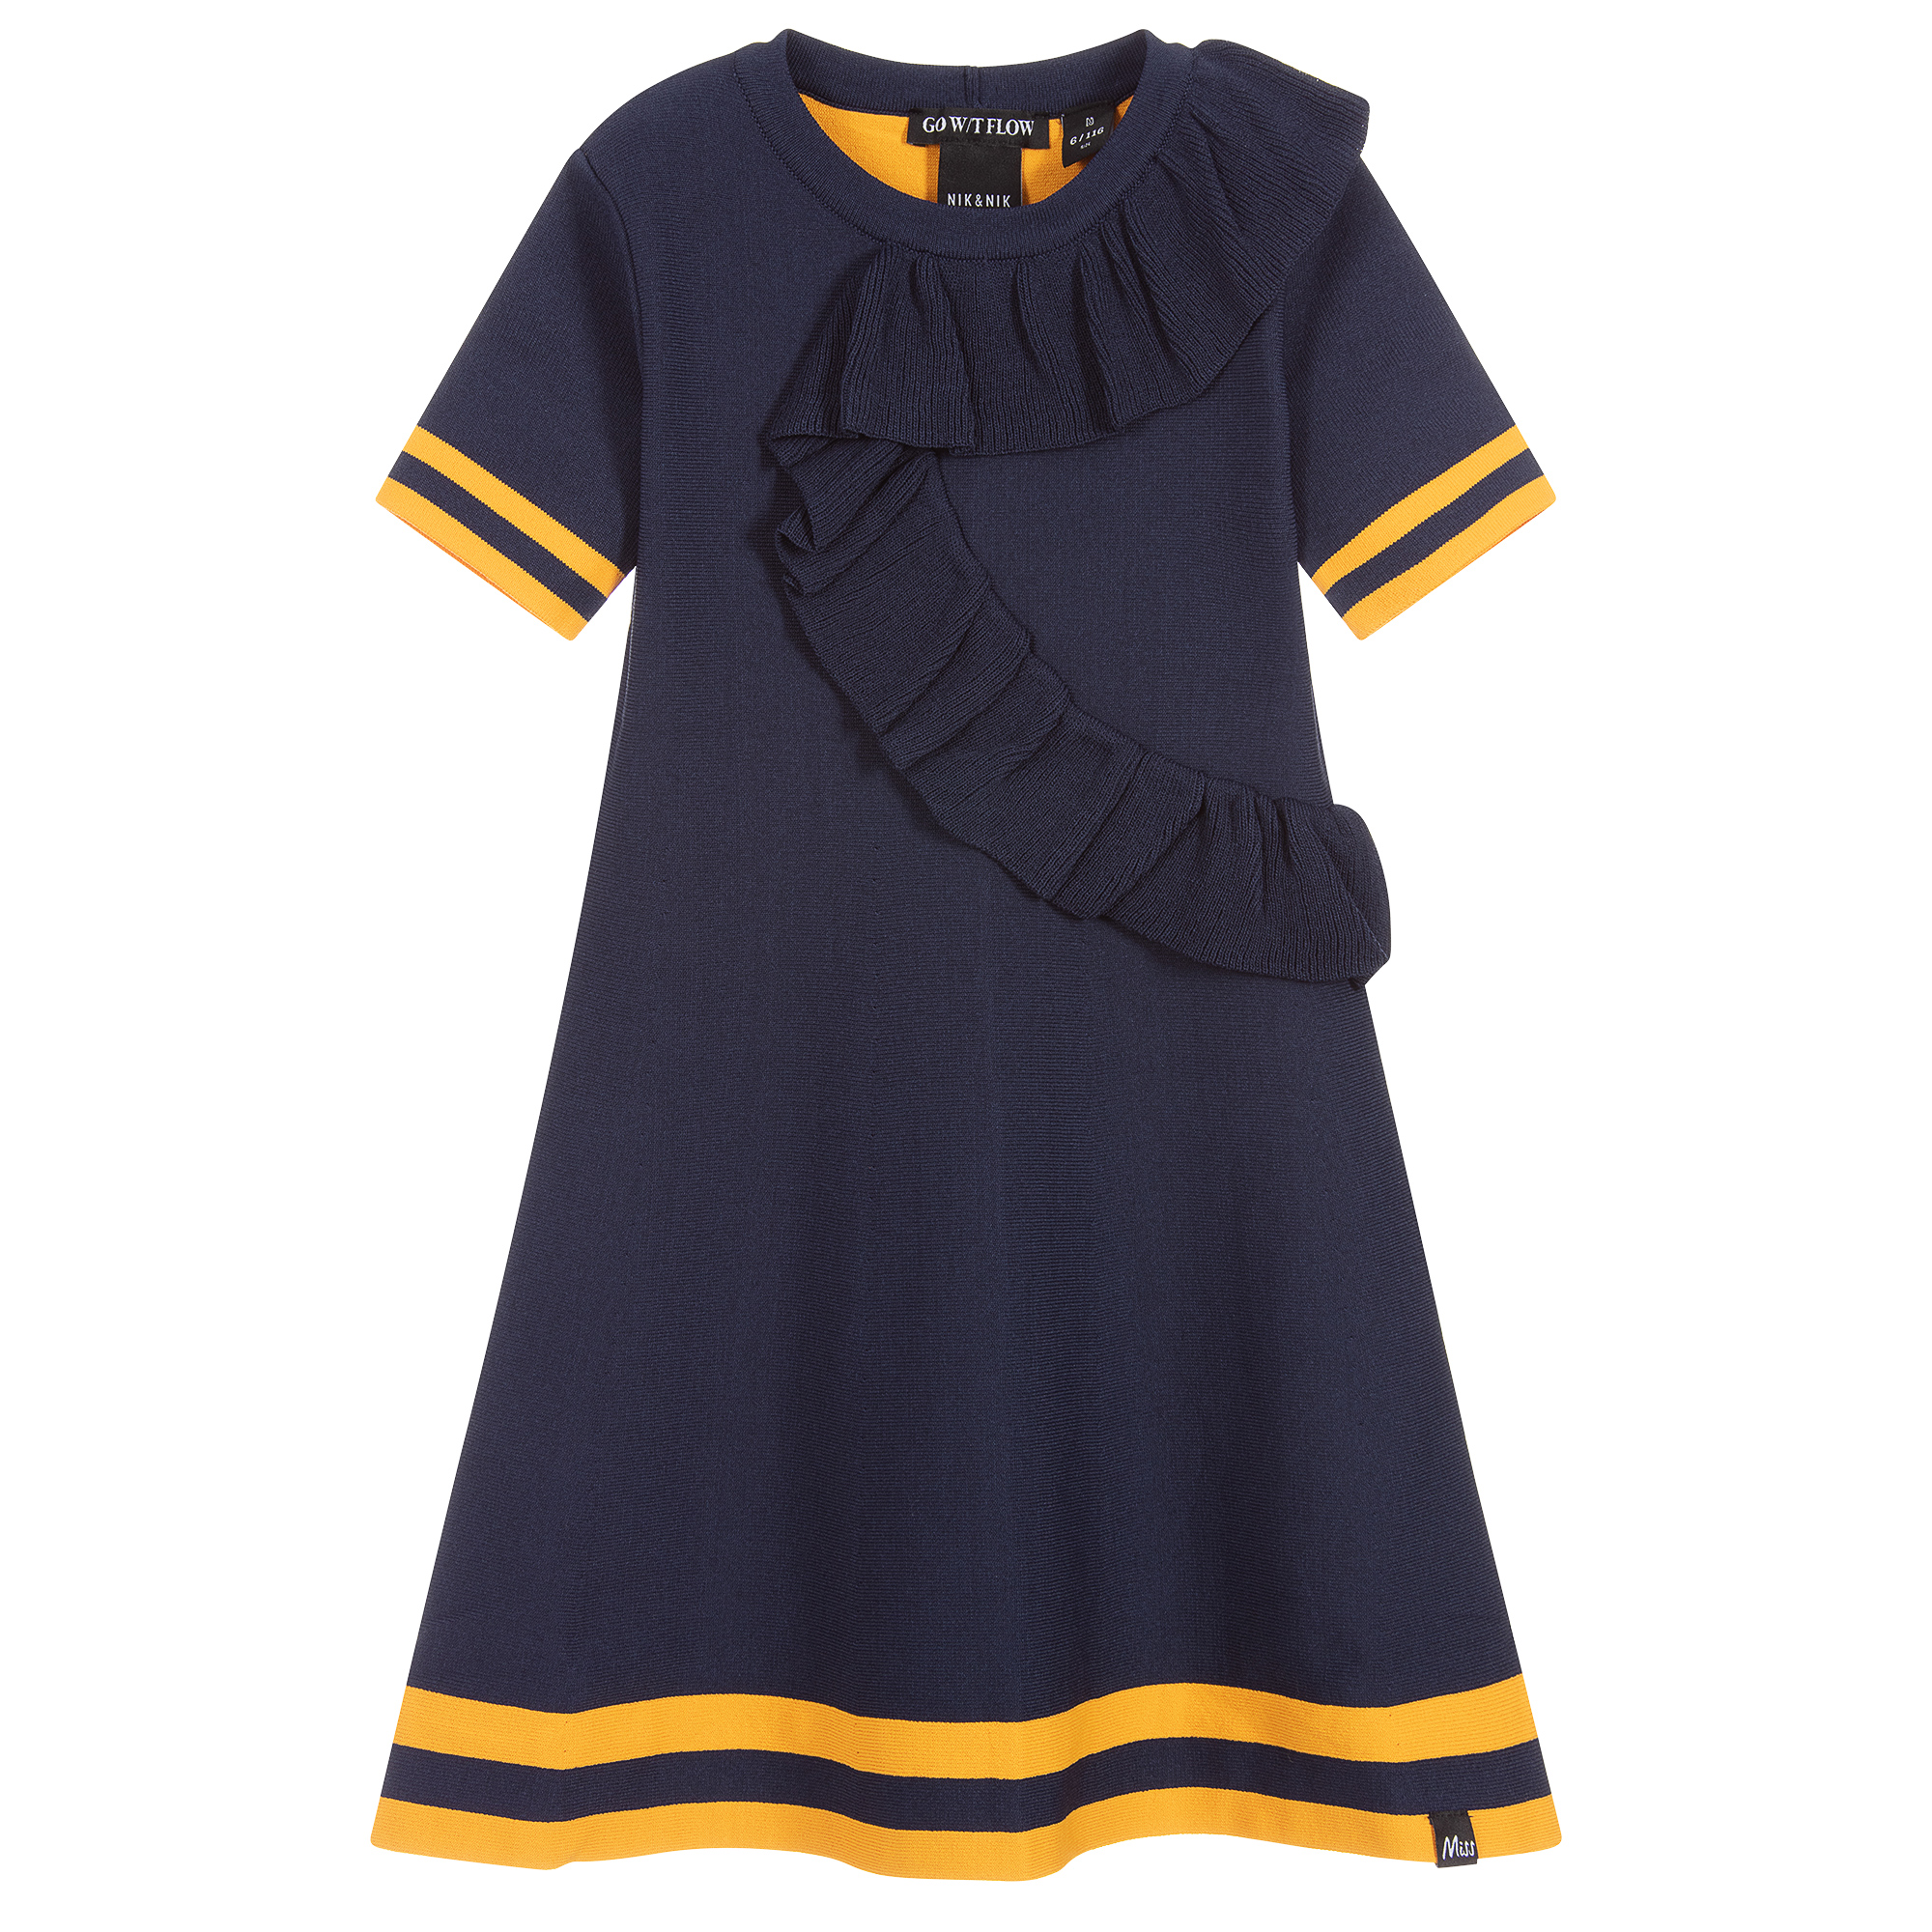 navy blue knit dress